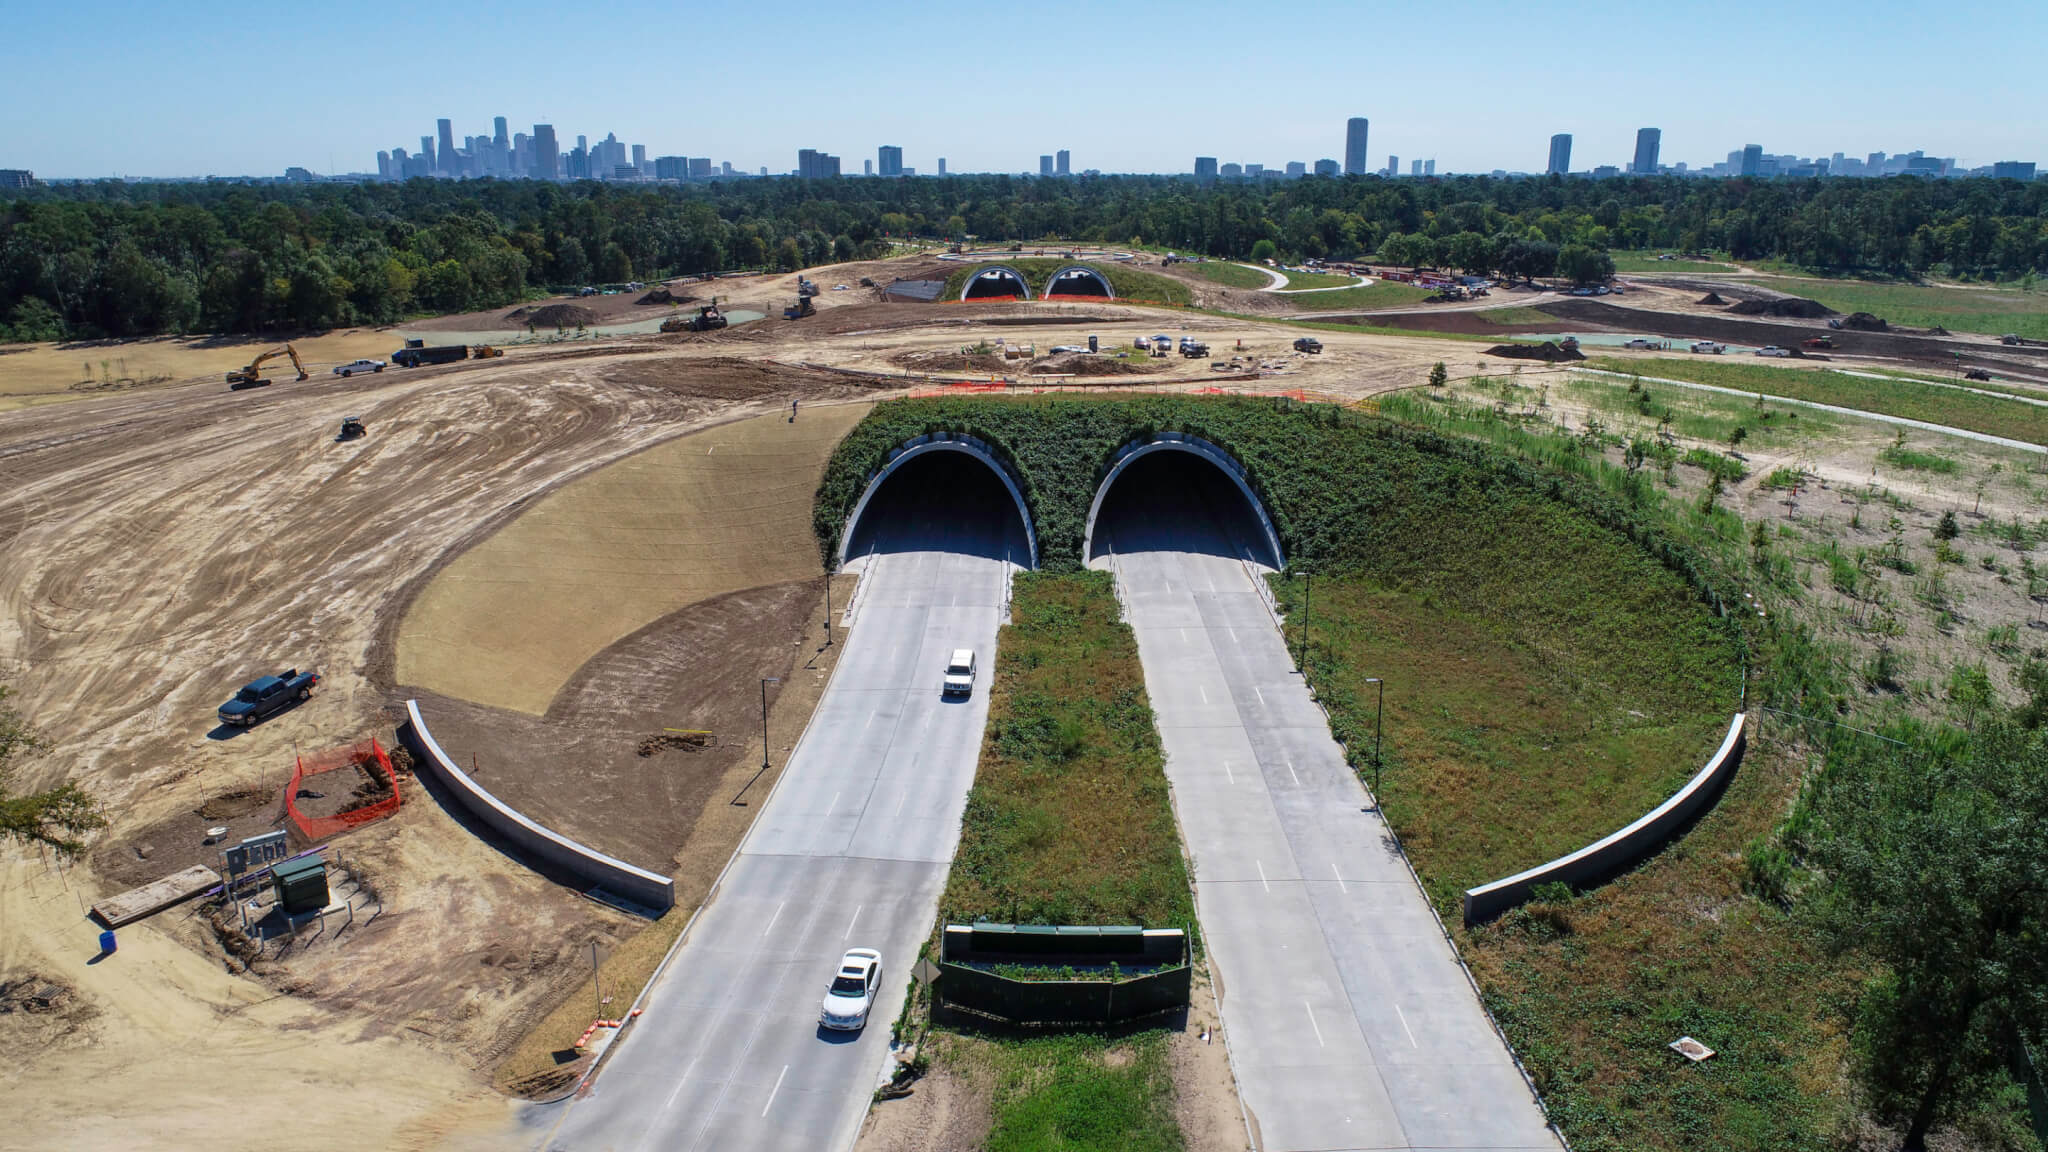 休斯顿的一个大型公园正在建设一座大陆桥